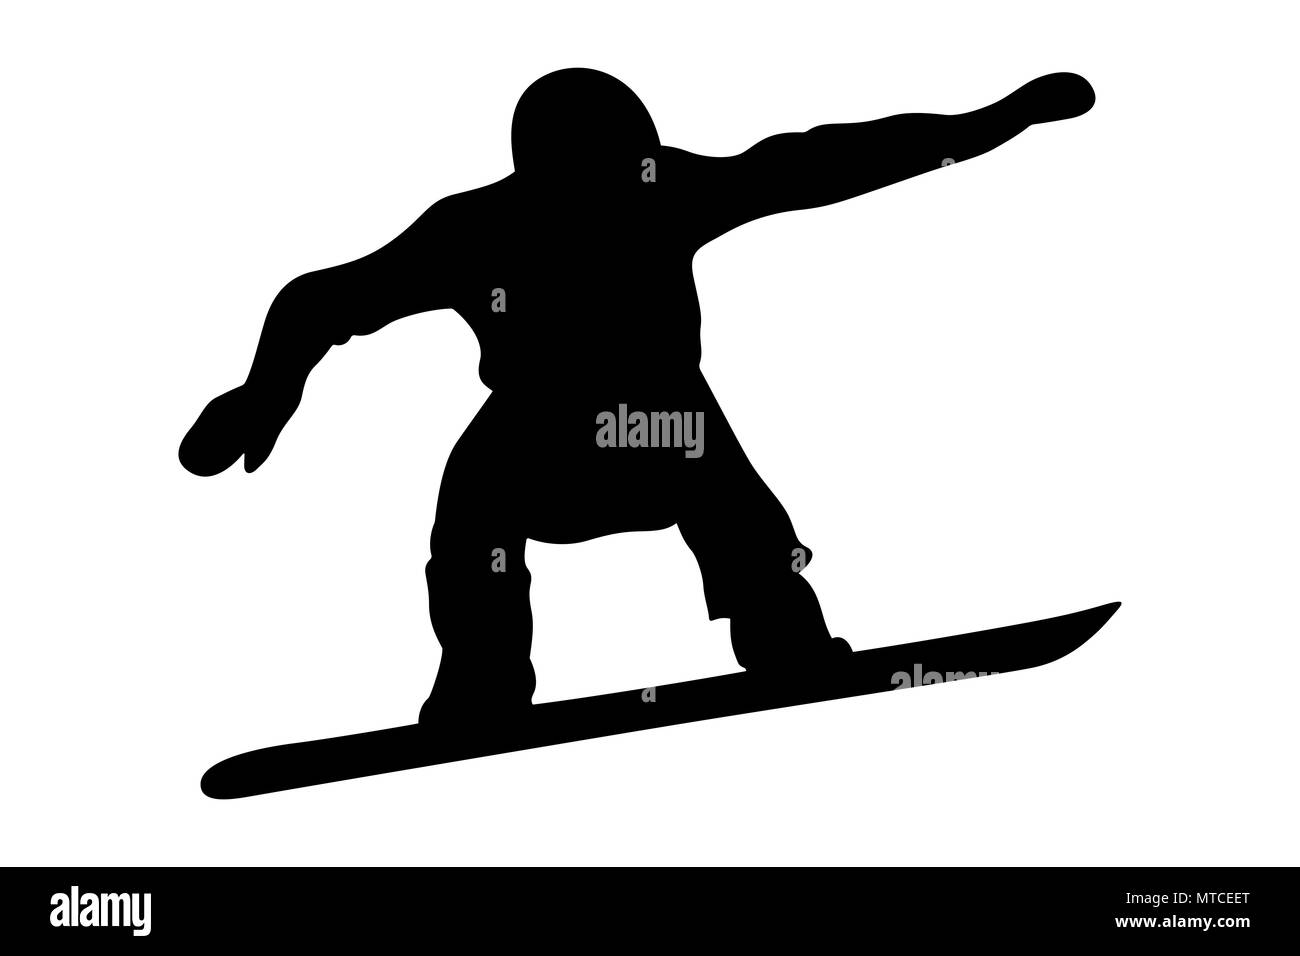 Homme snowboarder jump et de vol silhouette noire Banque D'Images